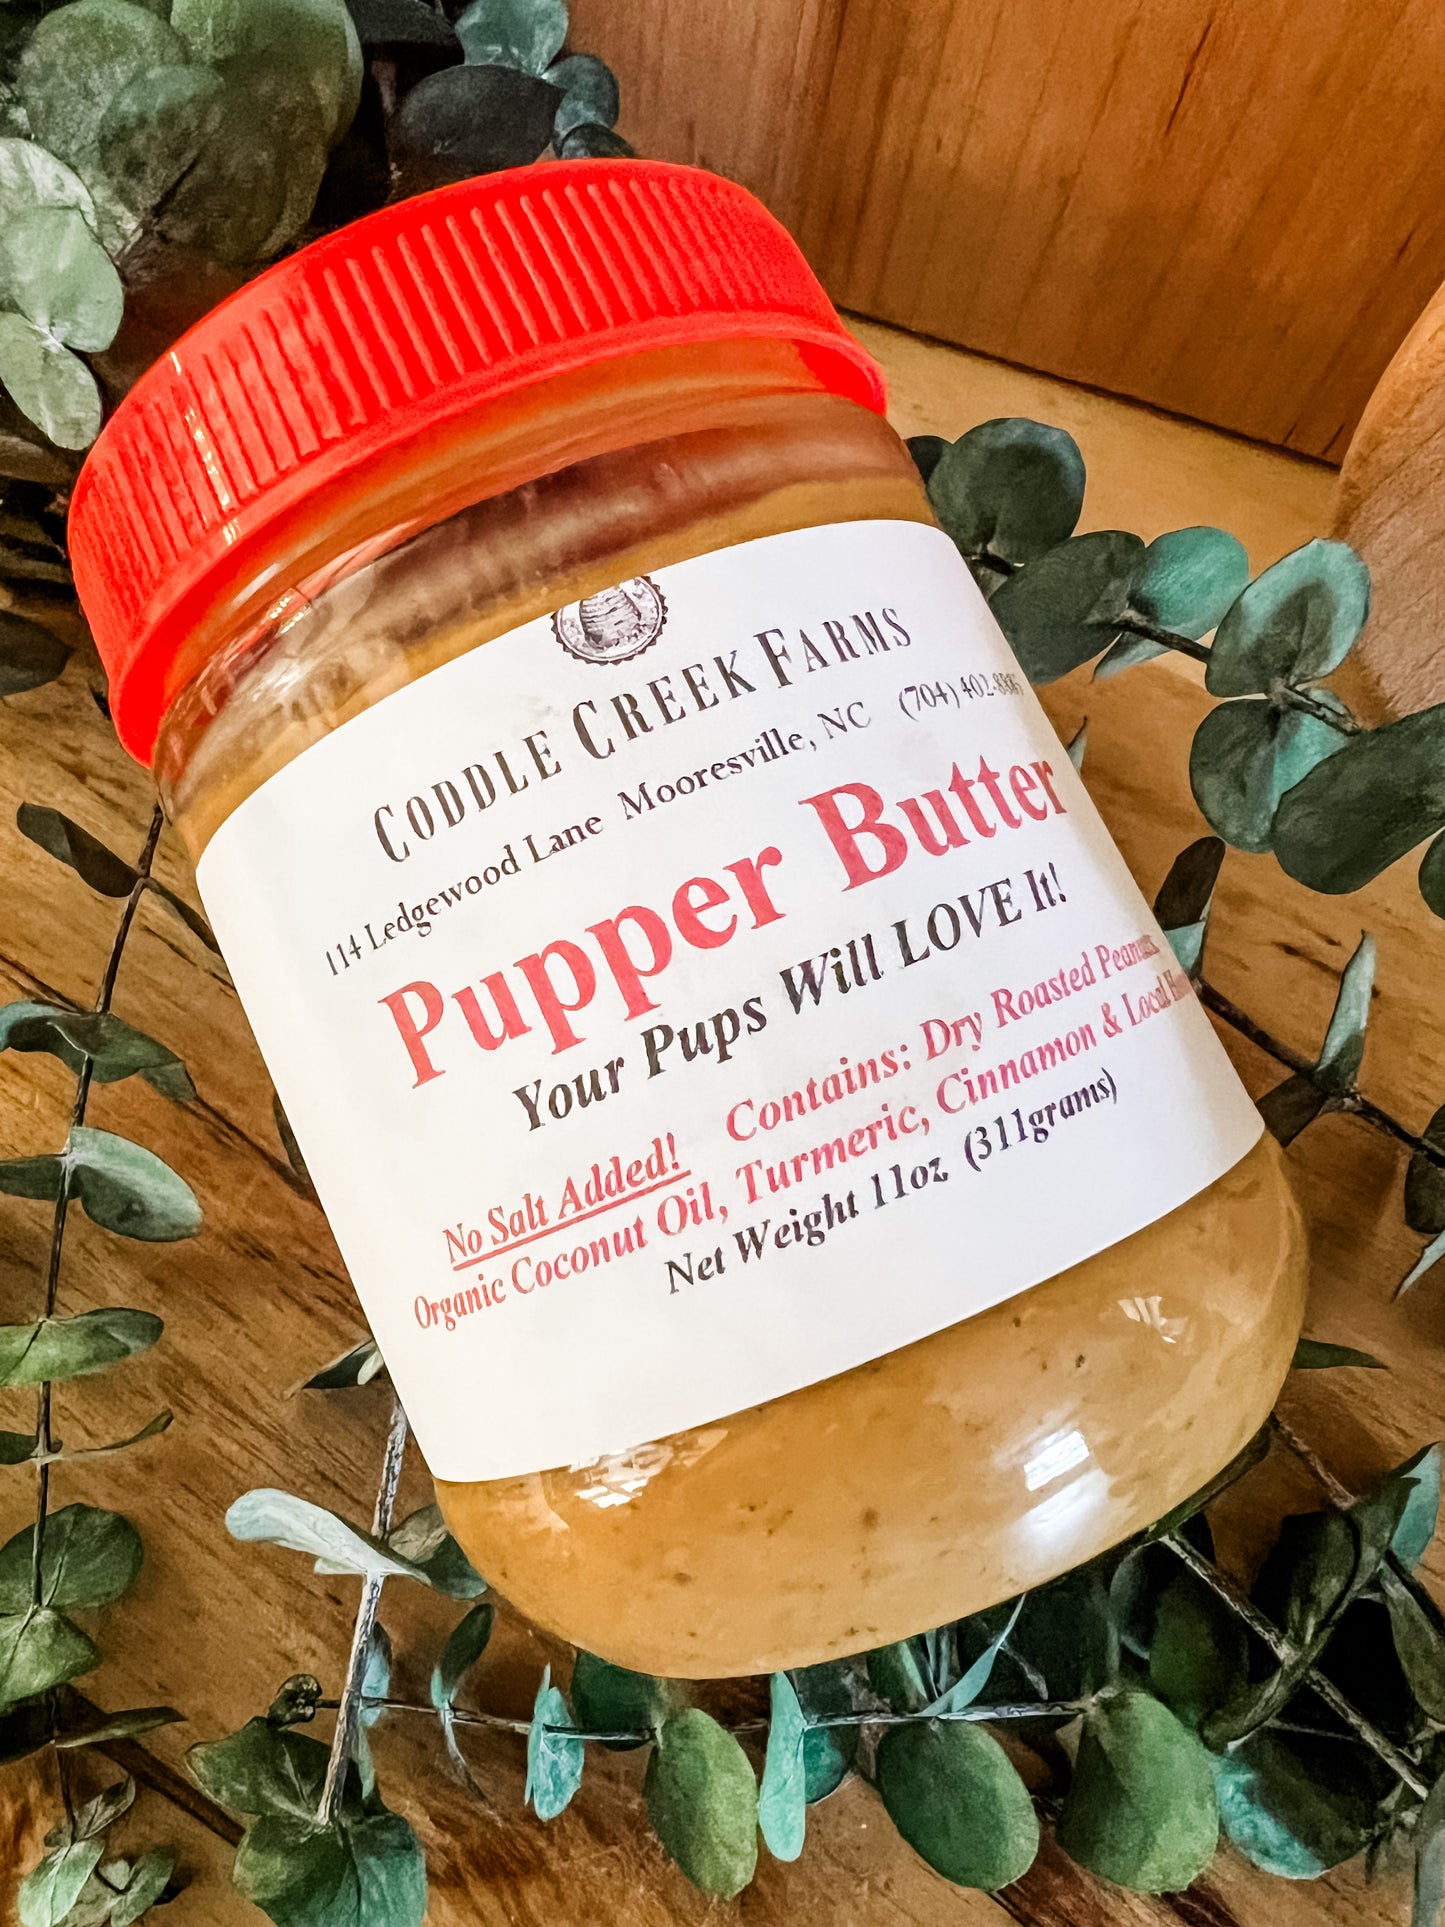 Coddle Creek Farms PUPPER BUTTER Peanut Butter Nut Butter